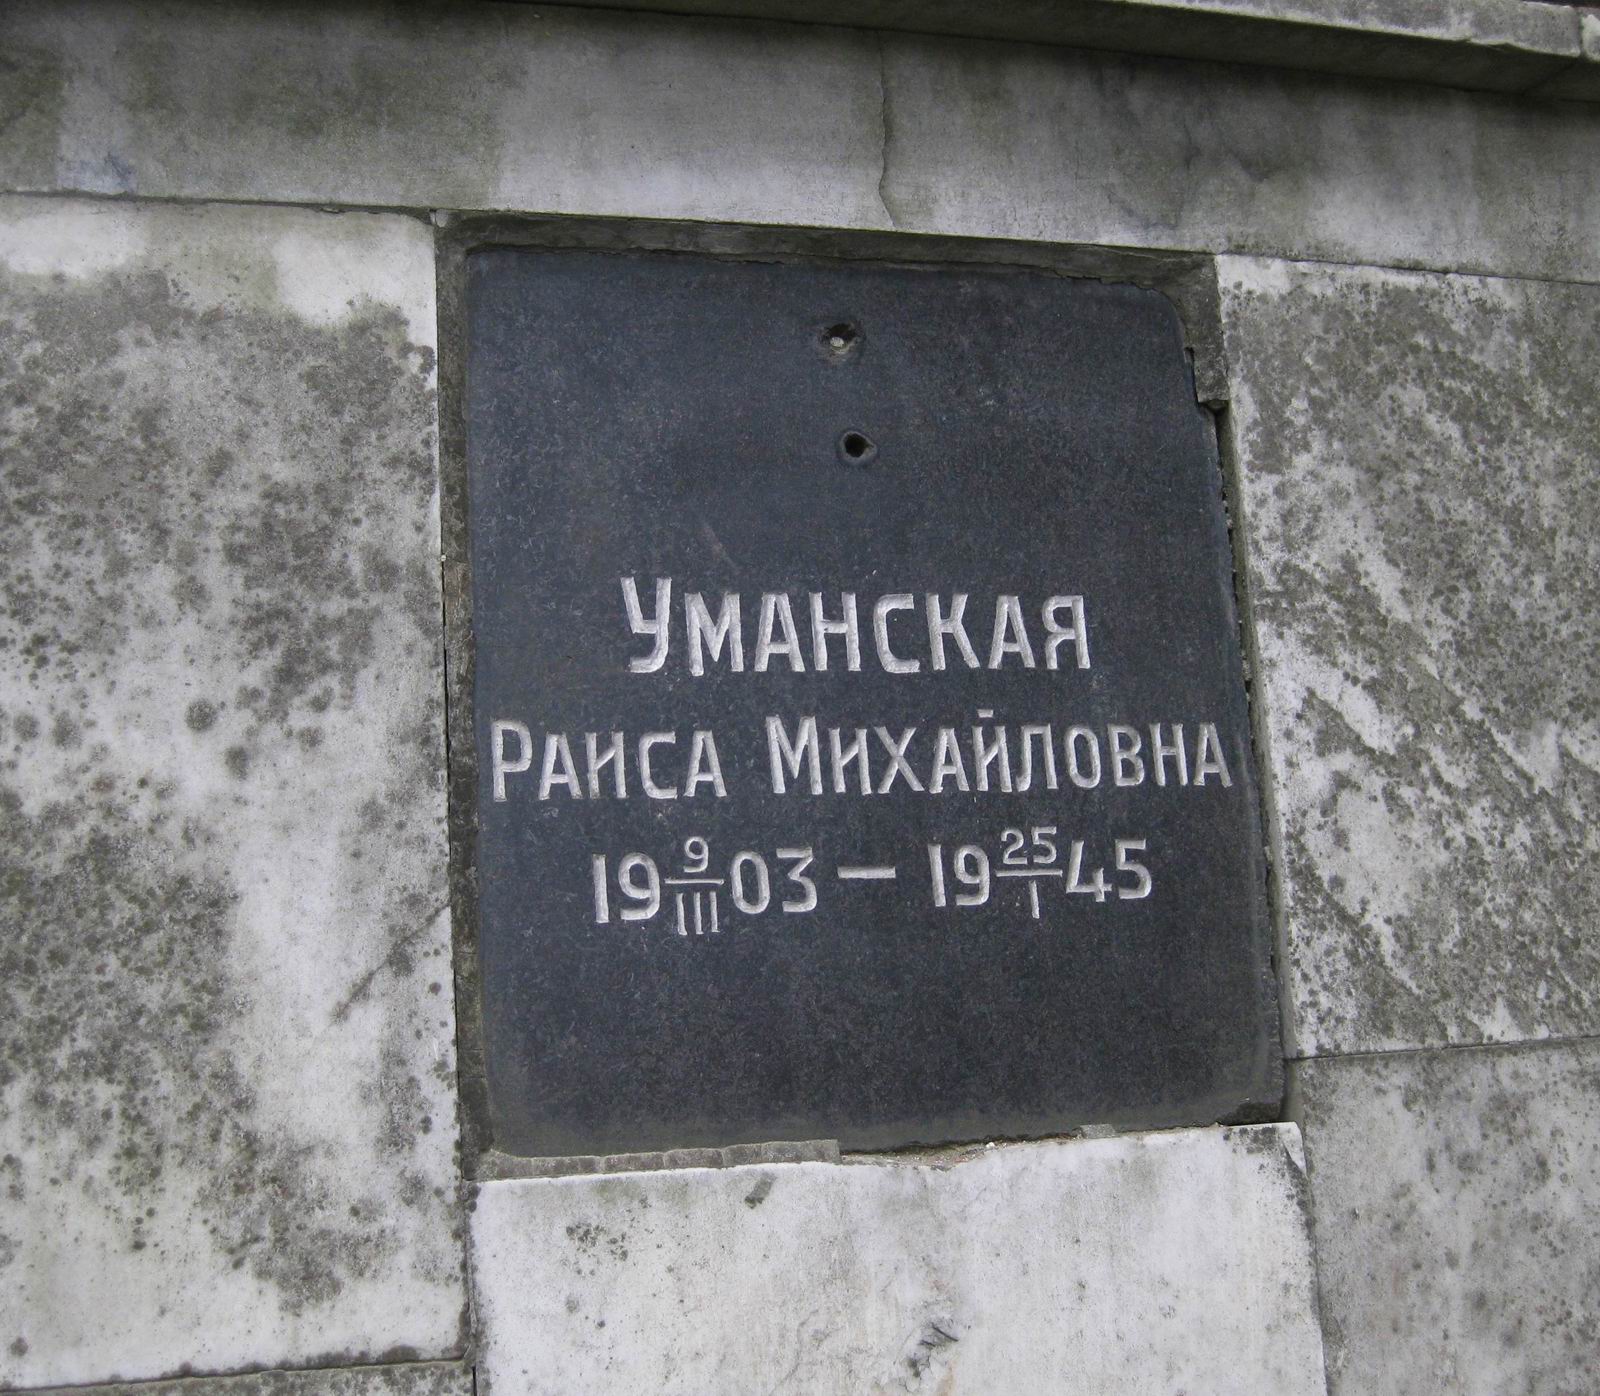 Плита на нише Уманской Р.М. (1903-1945), на Новодевичьем кладбище (колумбарий [1]-4-1). Нажмите левую кнопку мыши, чтобы увидеть общий вид.